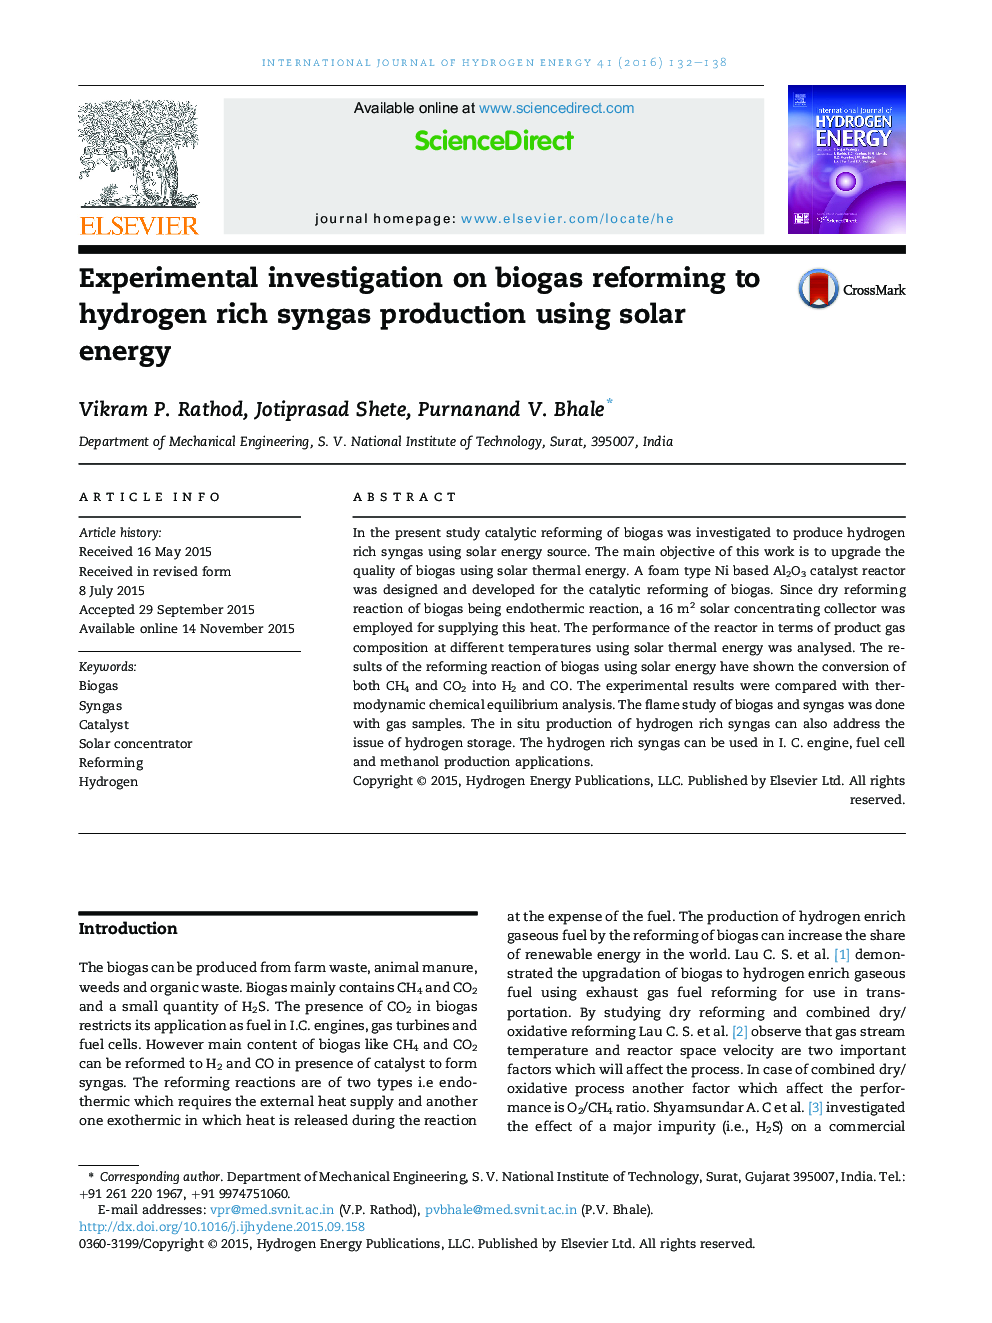 تحقیقات تجربی در مورد اصلاح بیوگاز به تولید هیدروژن غنی شده با استفاده از انرژی خورشیدی 